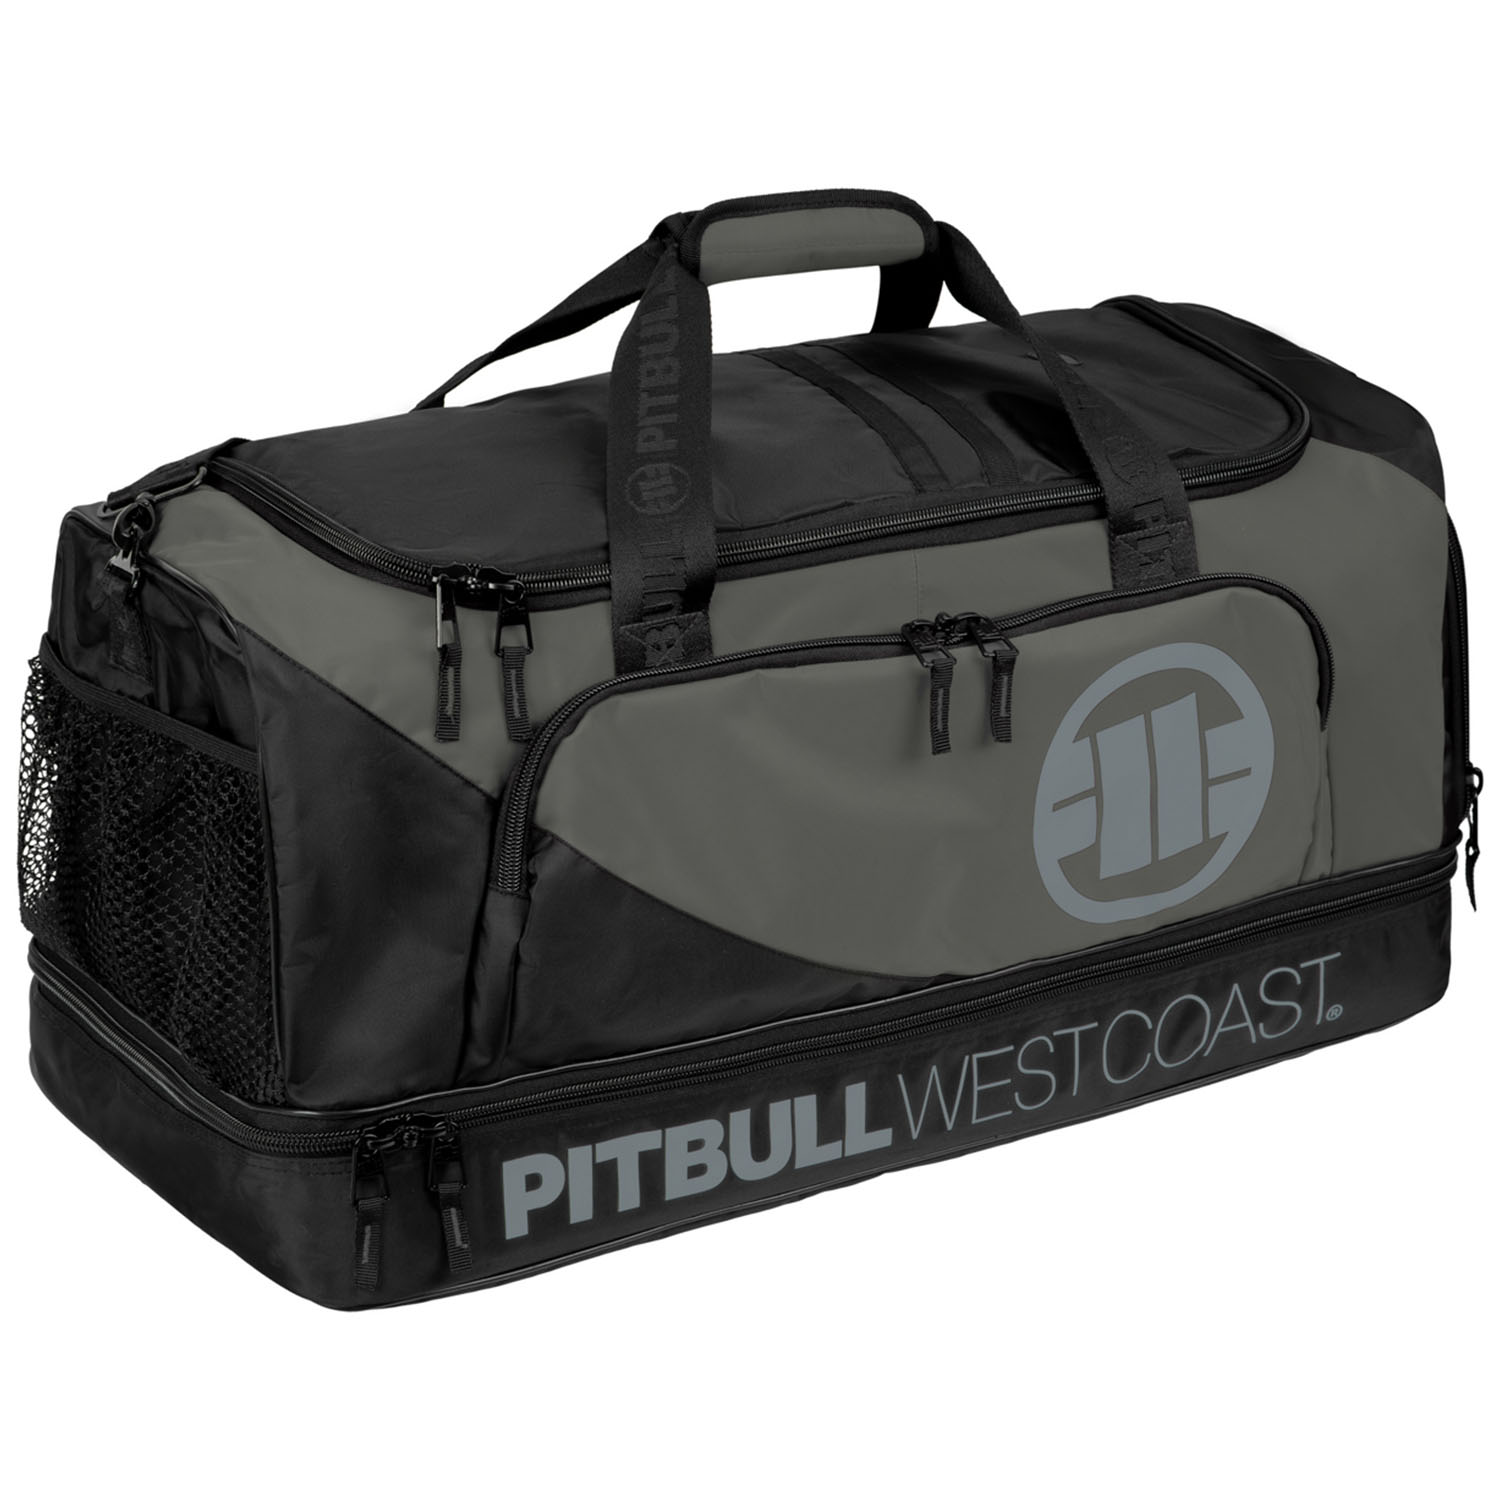 Pit Bull West Coast Sporttasche, Big Duffle Bag, Logo TNT, schwarz-grau